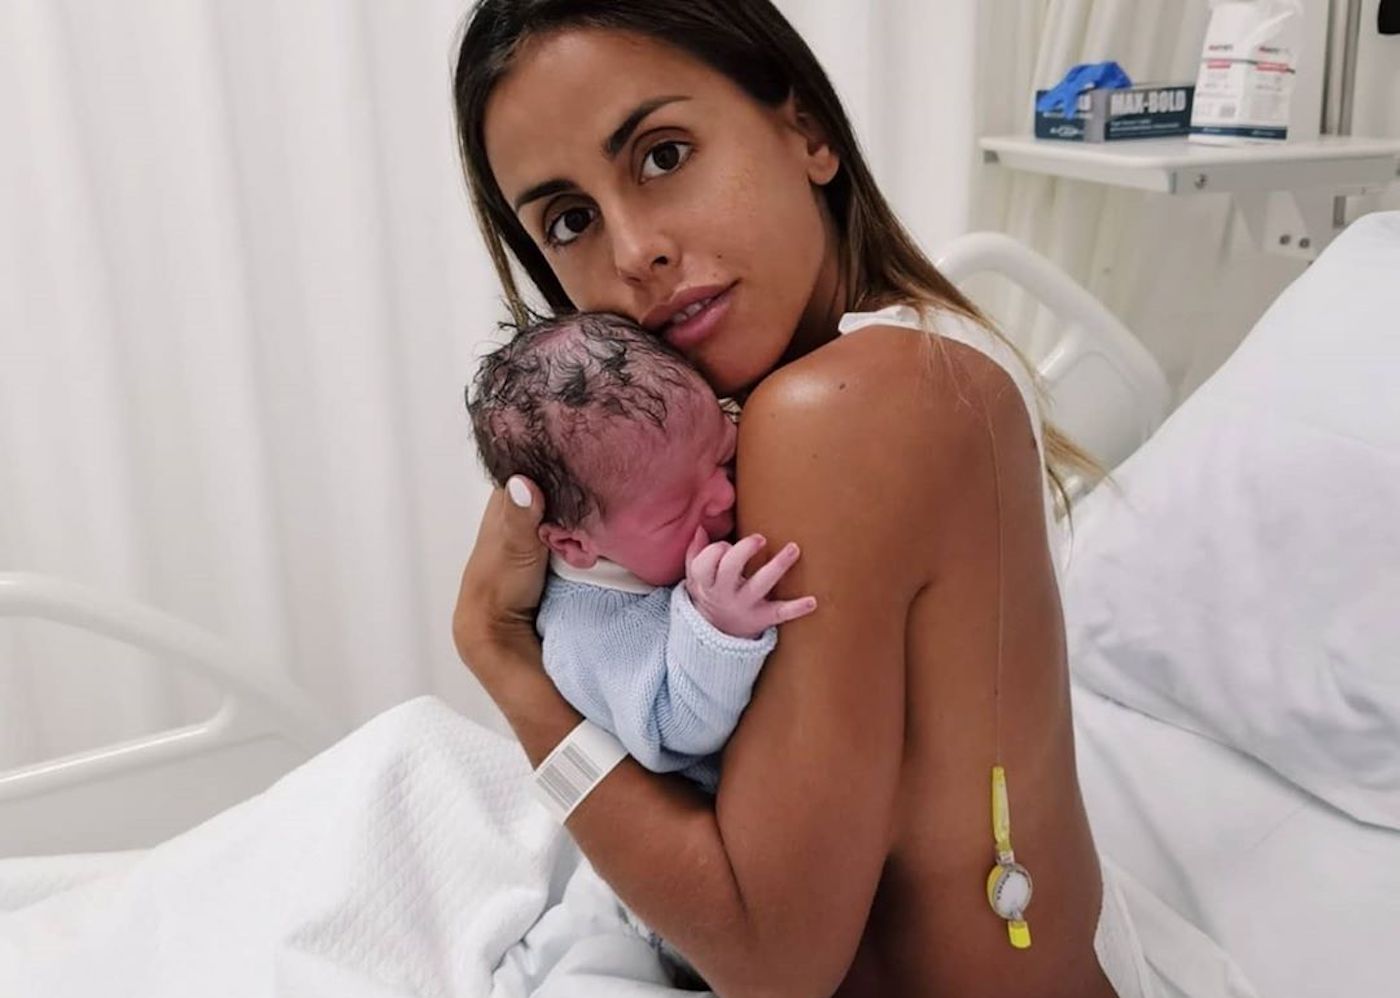 carolina patrocinio filho eduardo 3 Vídeo: As primeiras imagens da saída de Carolina Patrocínio da maternidade